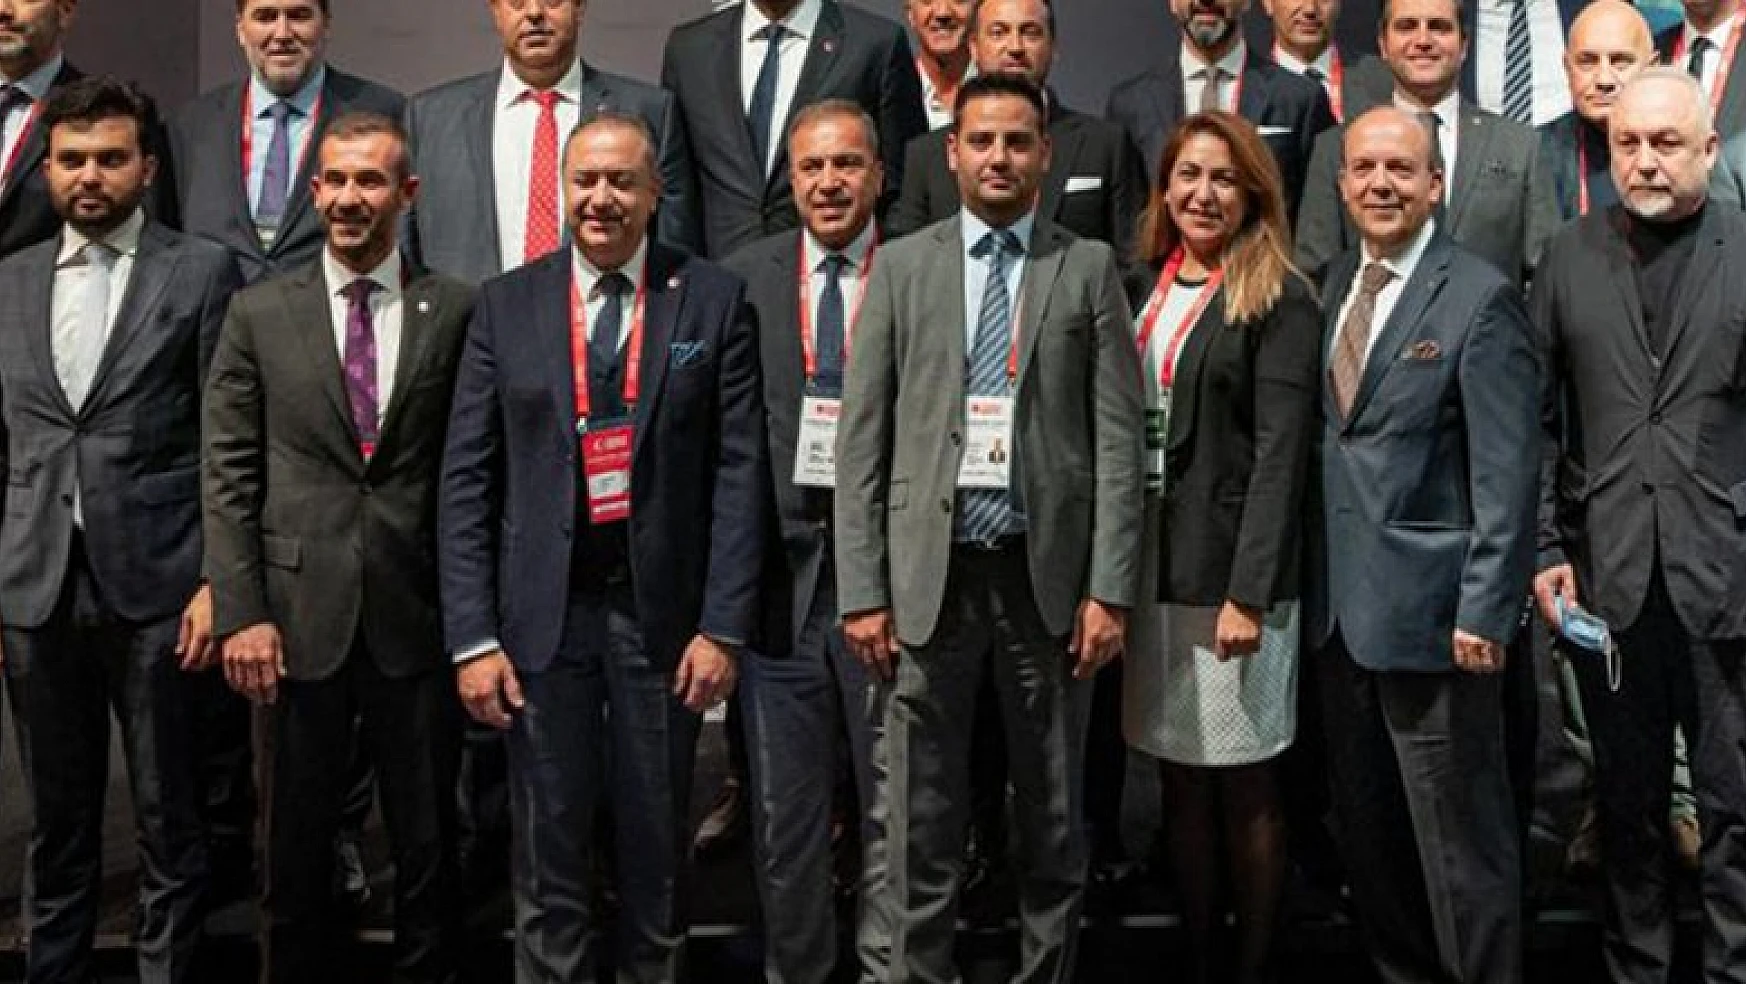 TBF'de Hidayet Türkoğlu yeniden başkan